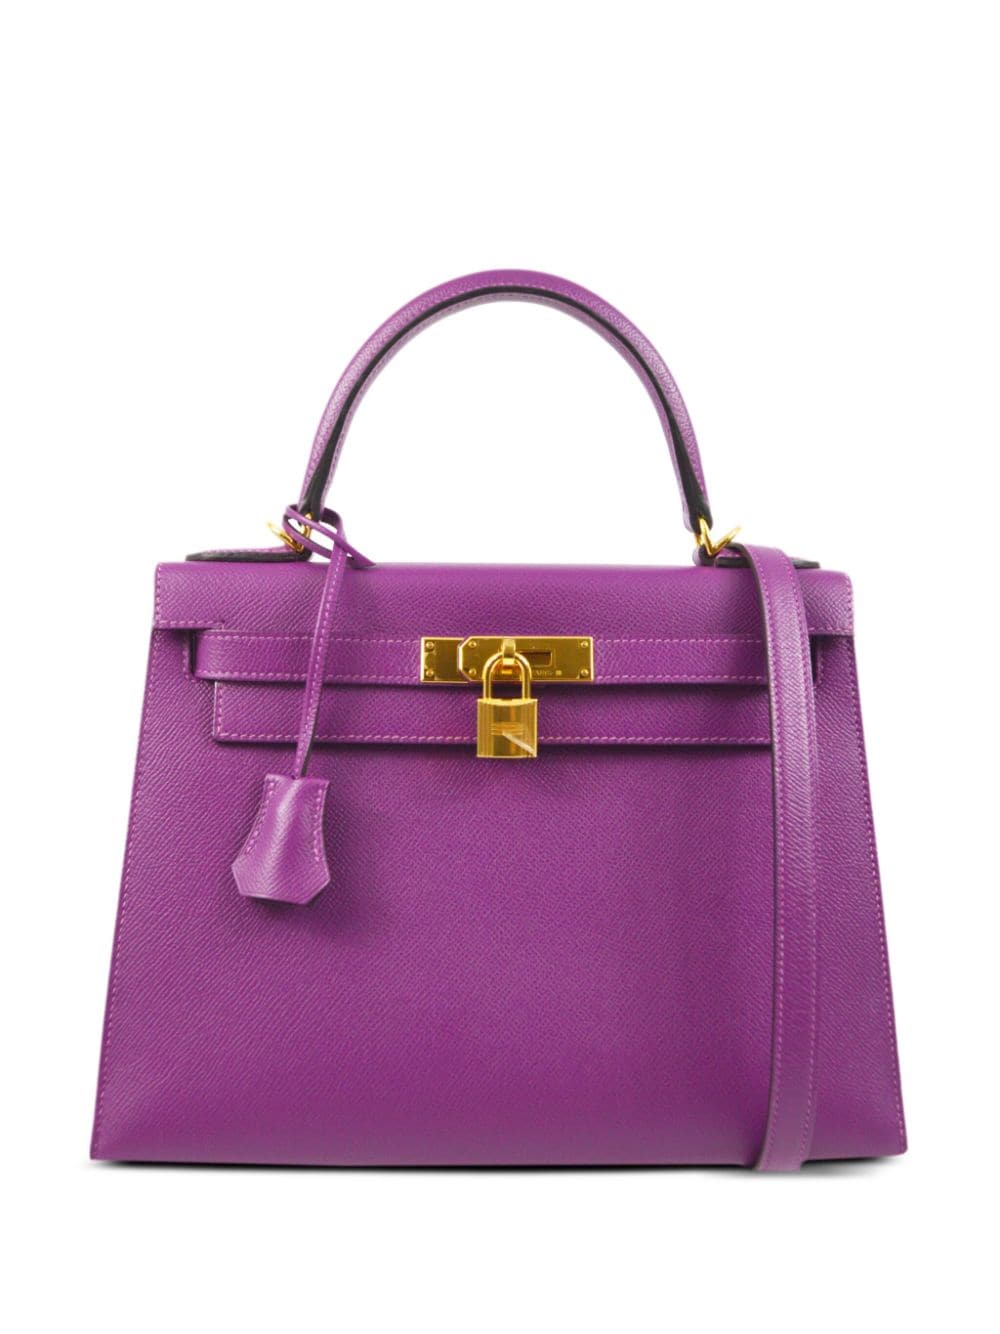 Pre-owned Hermes 2019 Kelly 28 Handbag In Purple